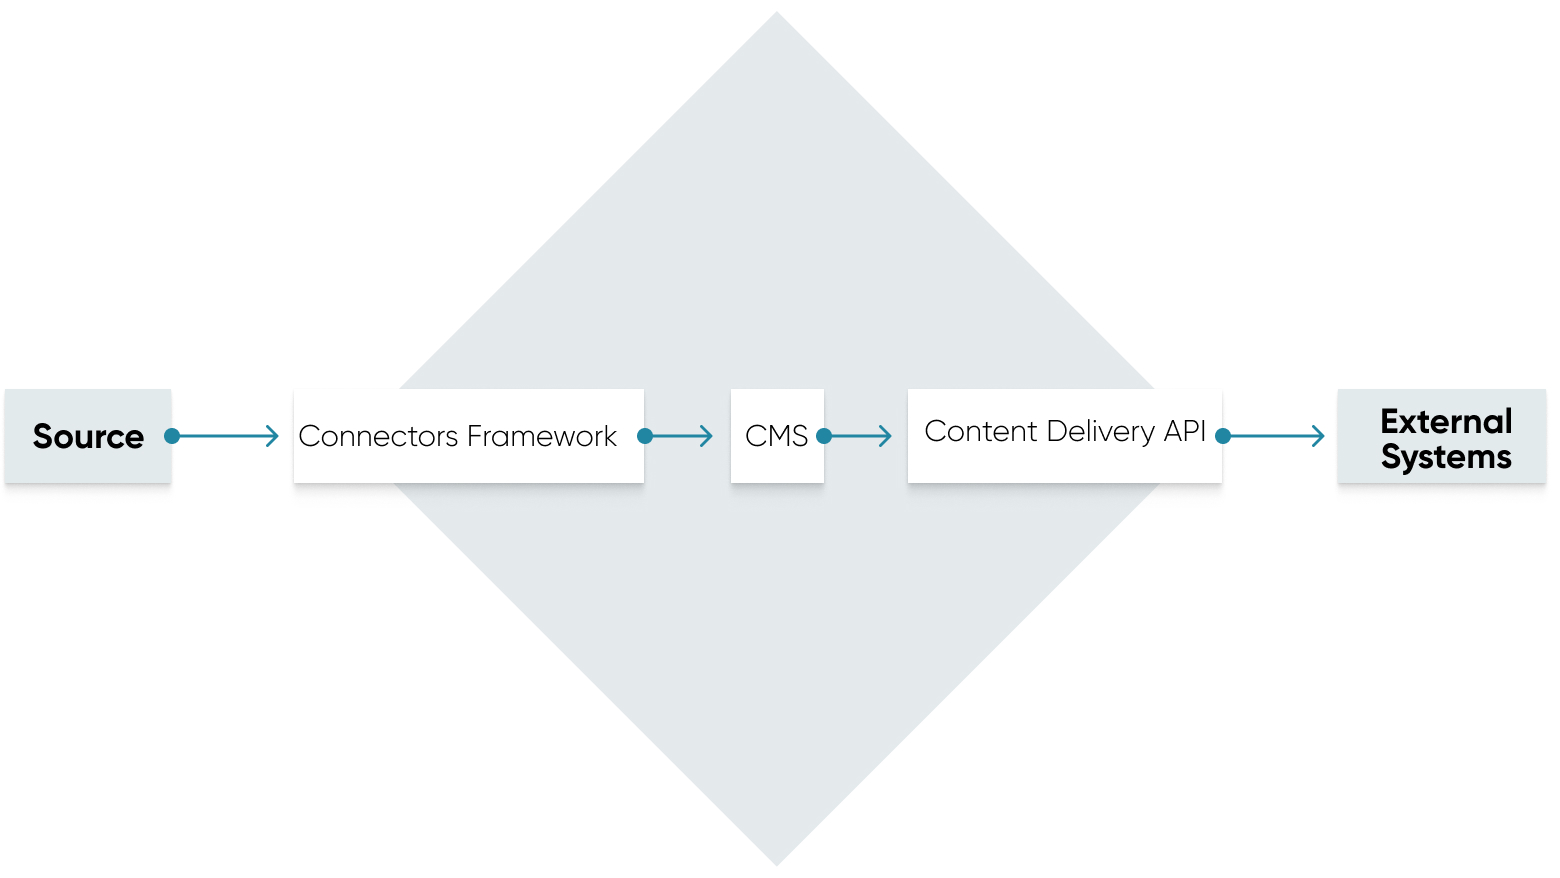 Daten bewegen sich von der Quelle zum Connectors Framework, zum CMS, zur Content Delivery API und zu externen Systemen